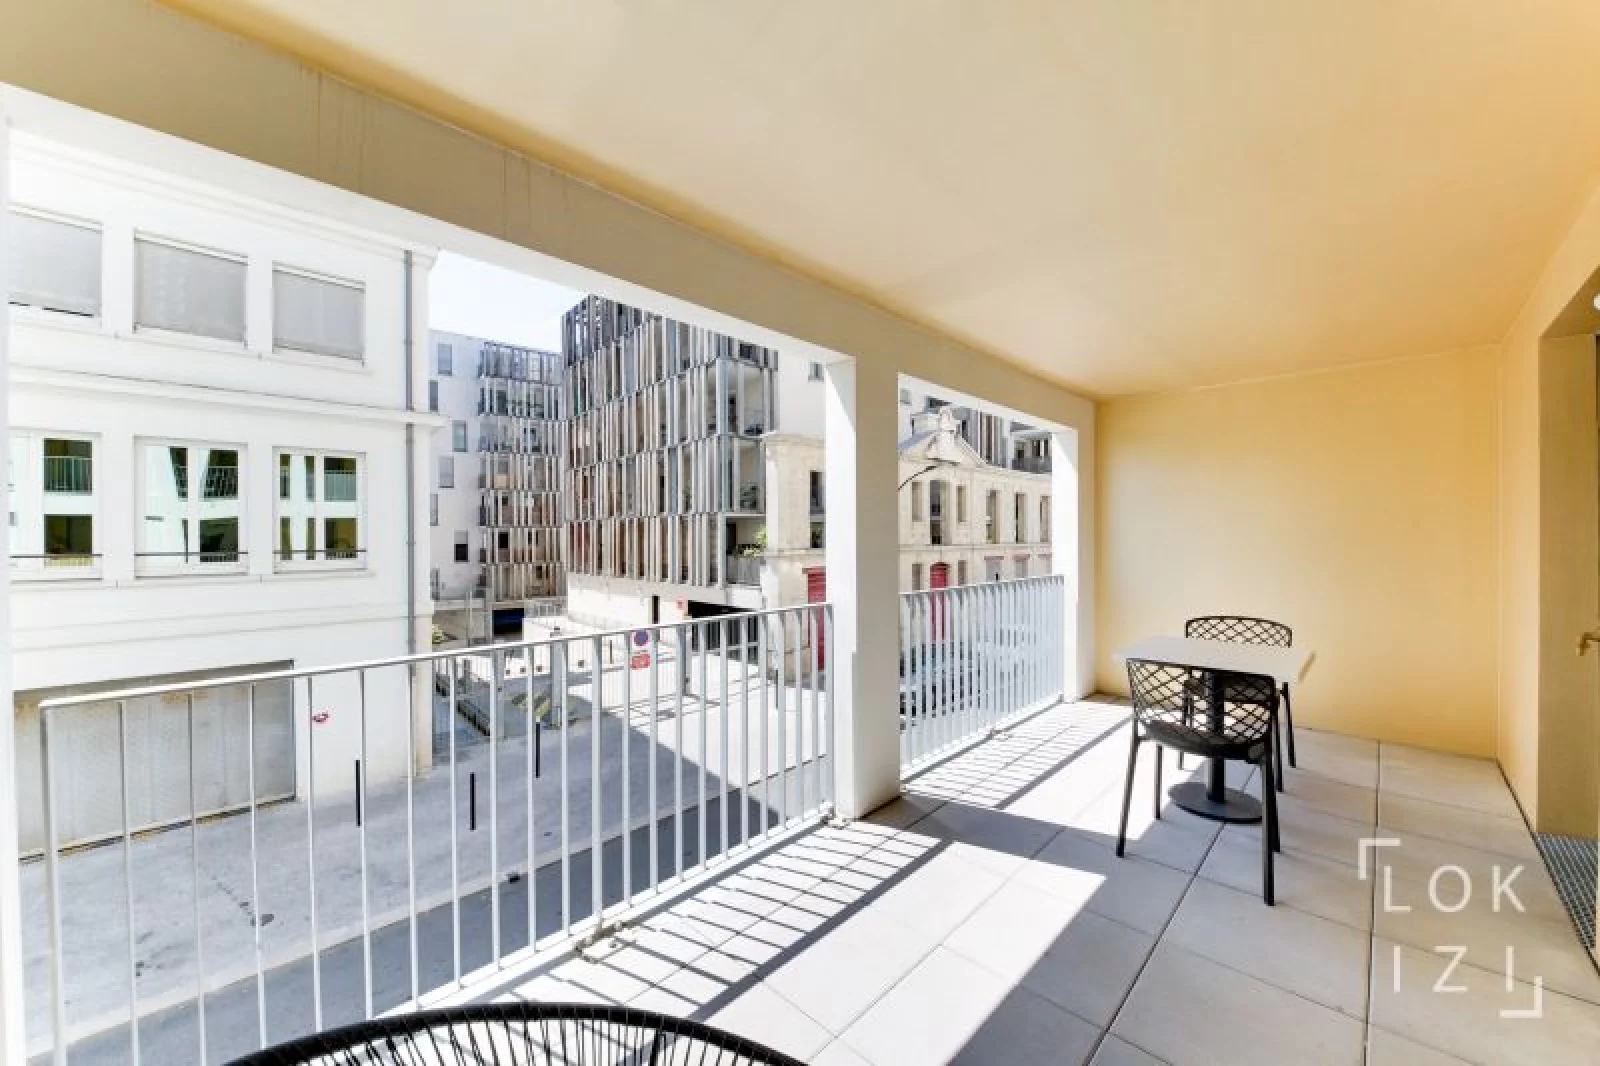 Location appartement meublé 3 pièces 63m² piscine (Bordeaux - Chartrons)